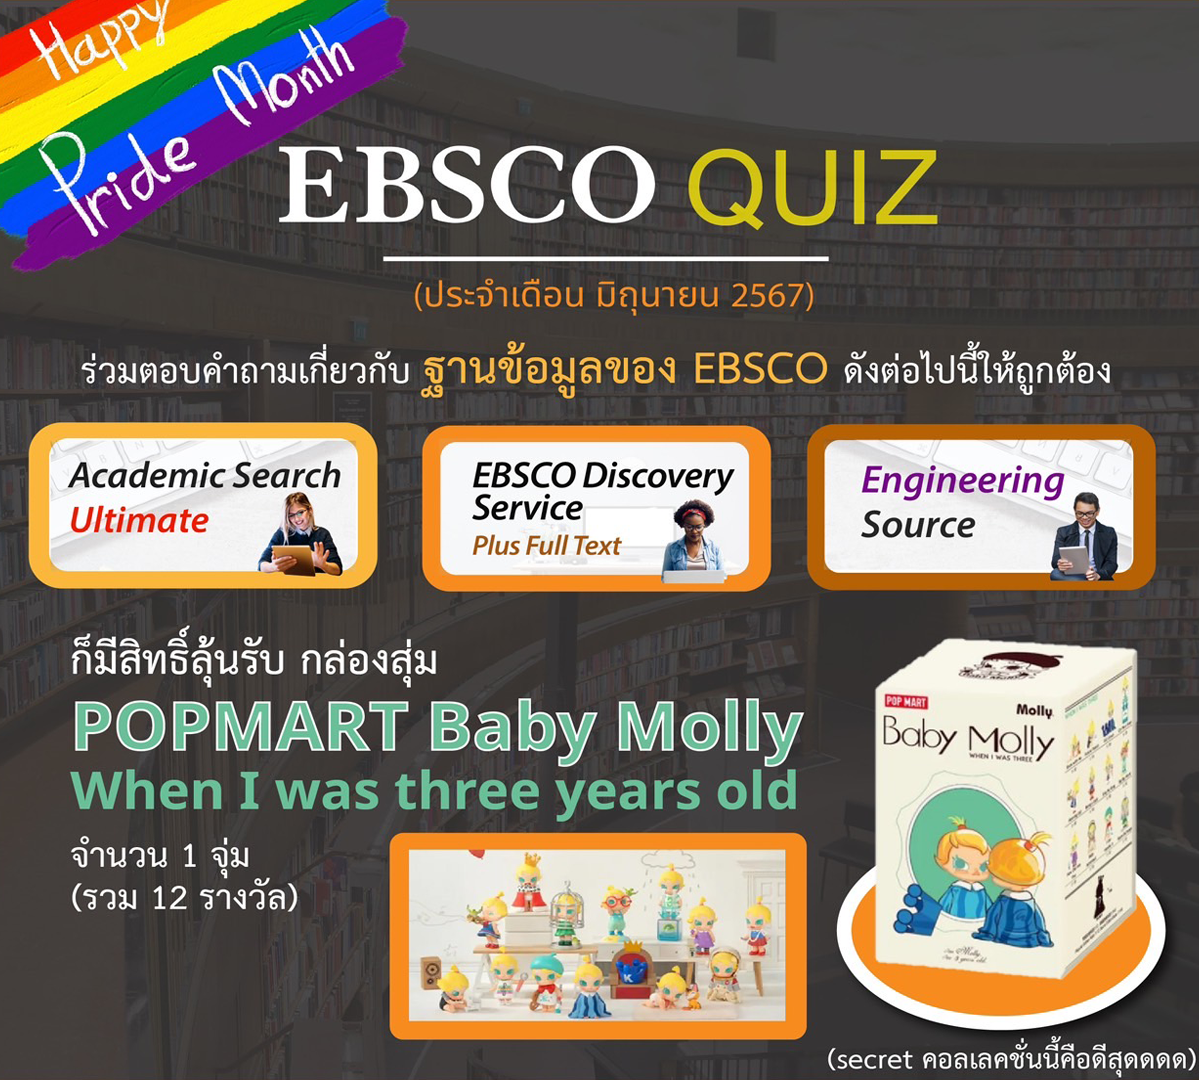 👩🏻‍💻“พี่พร้อม” ขอเชิญชวนนักศึกษา อาจารย์ และบุคลากรของมหาวิทยาลัยศิลปากรเข้าร่วมกิจกรรม EBSCO Quiz (ประจำเดือน มิถุนายน 2567)